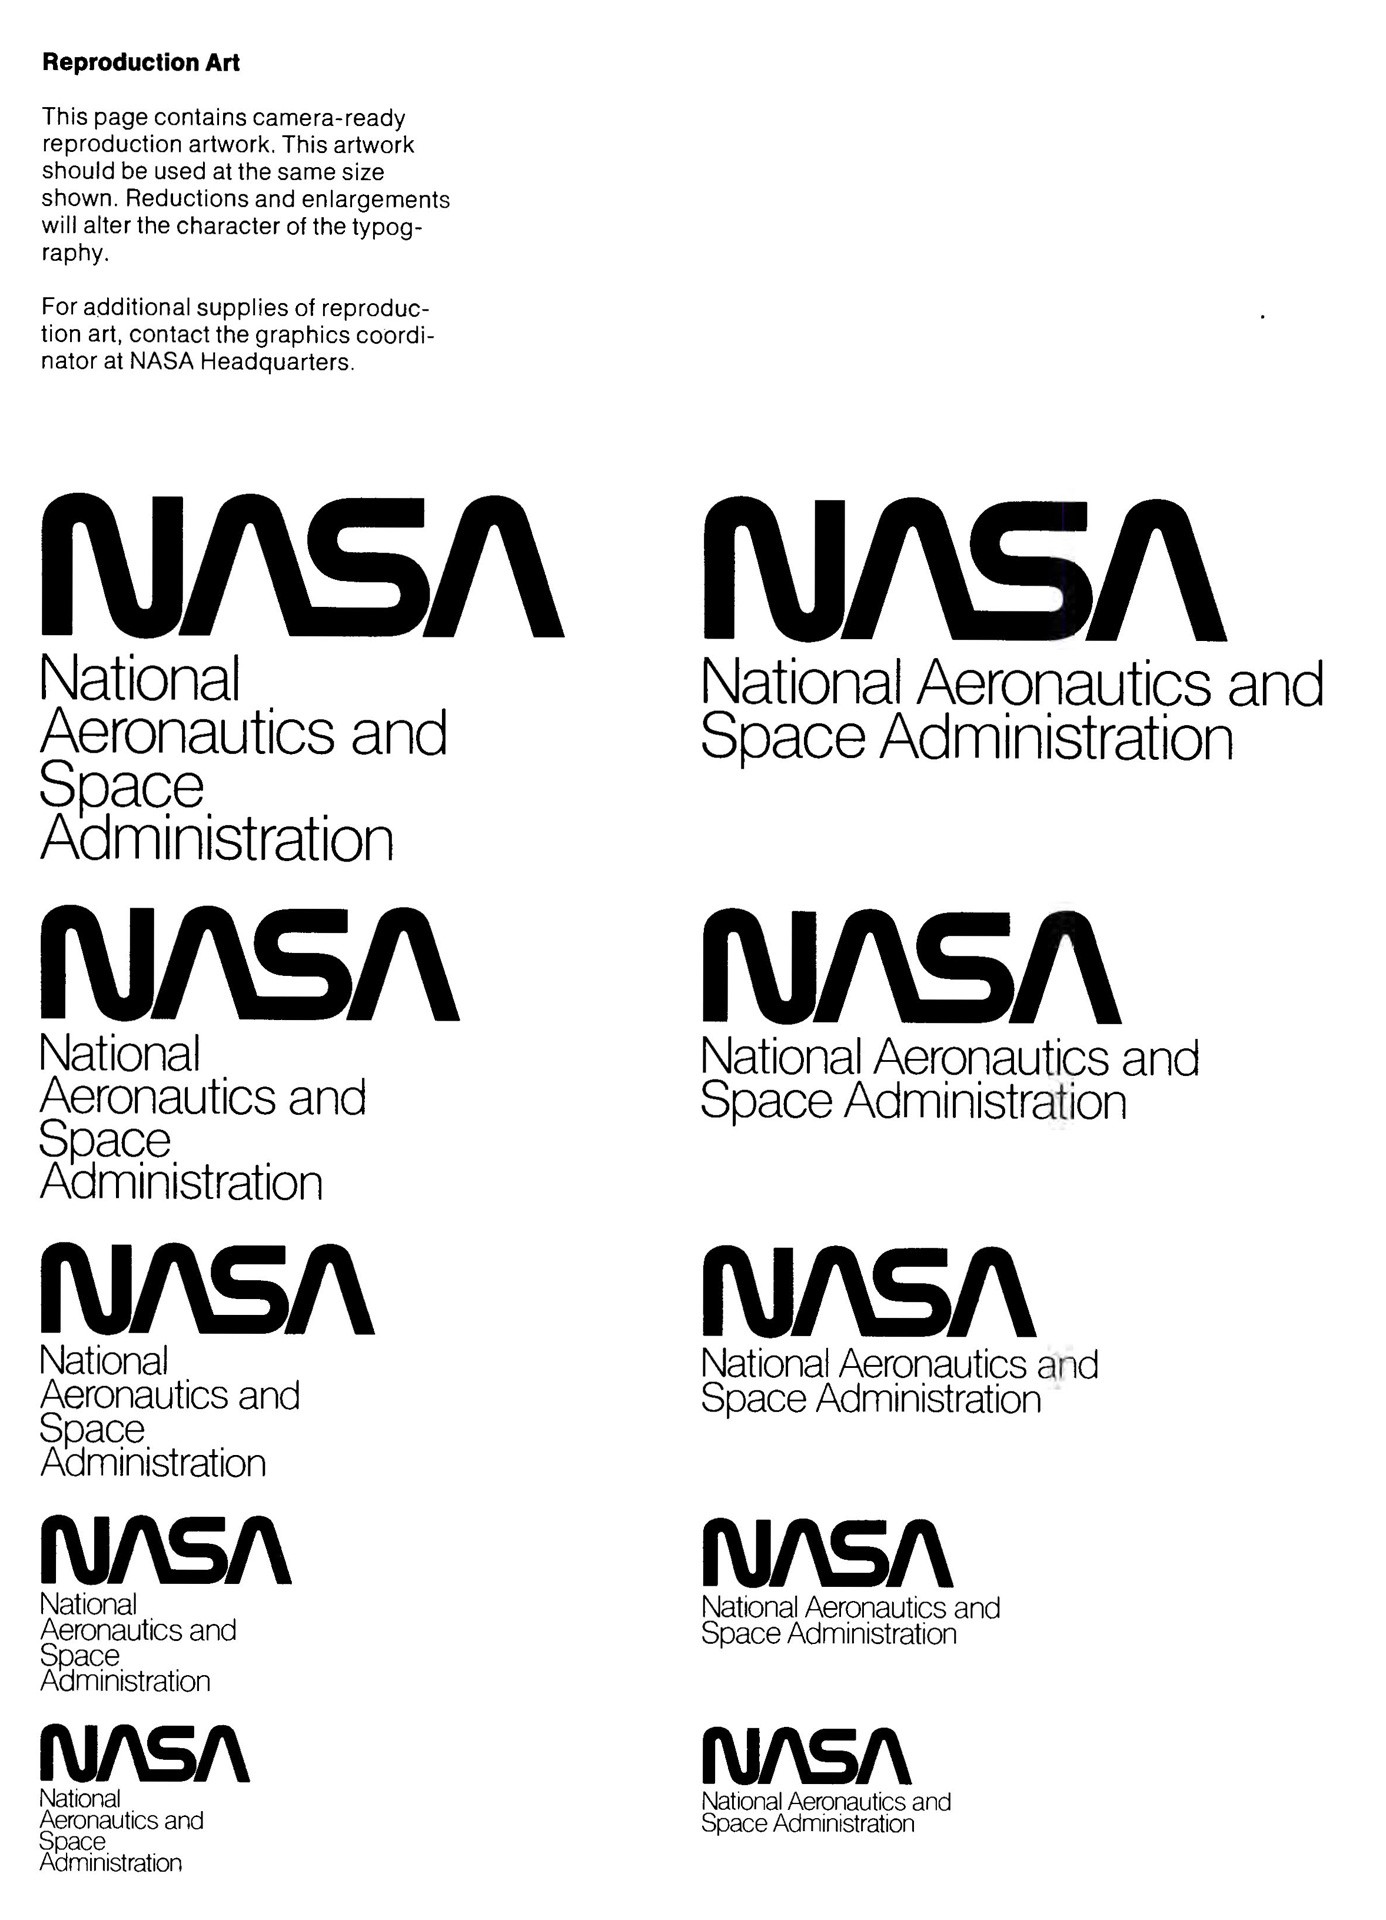 NASA logo usage